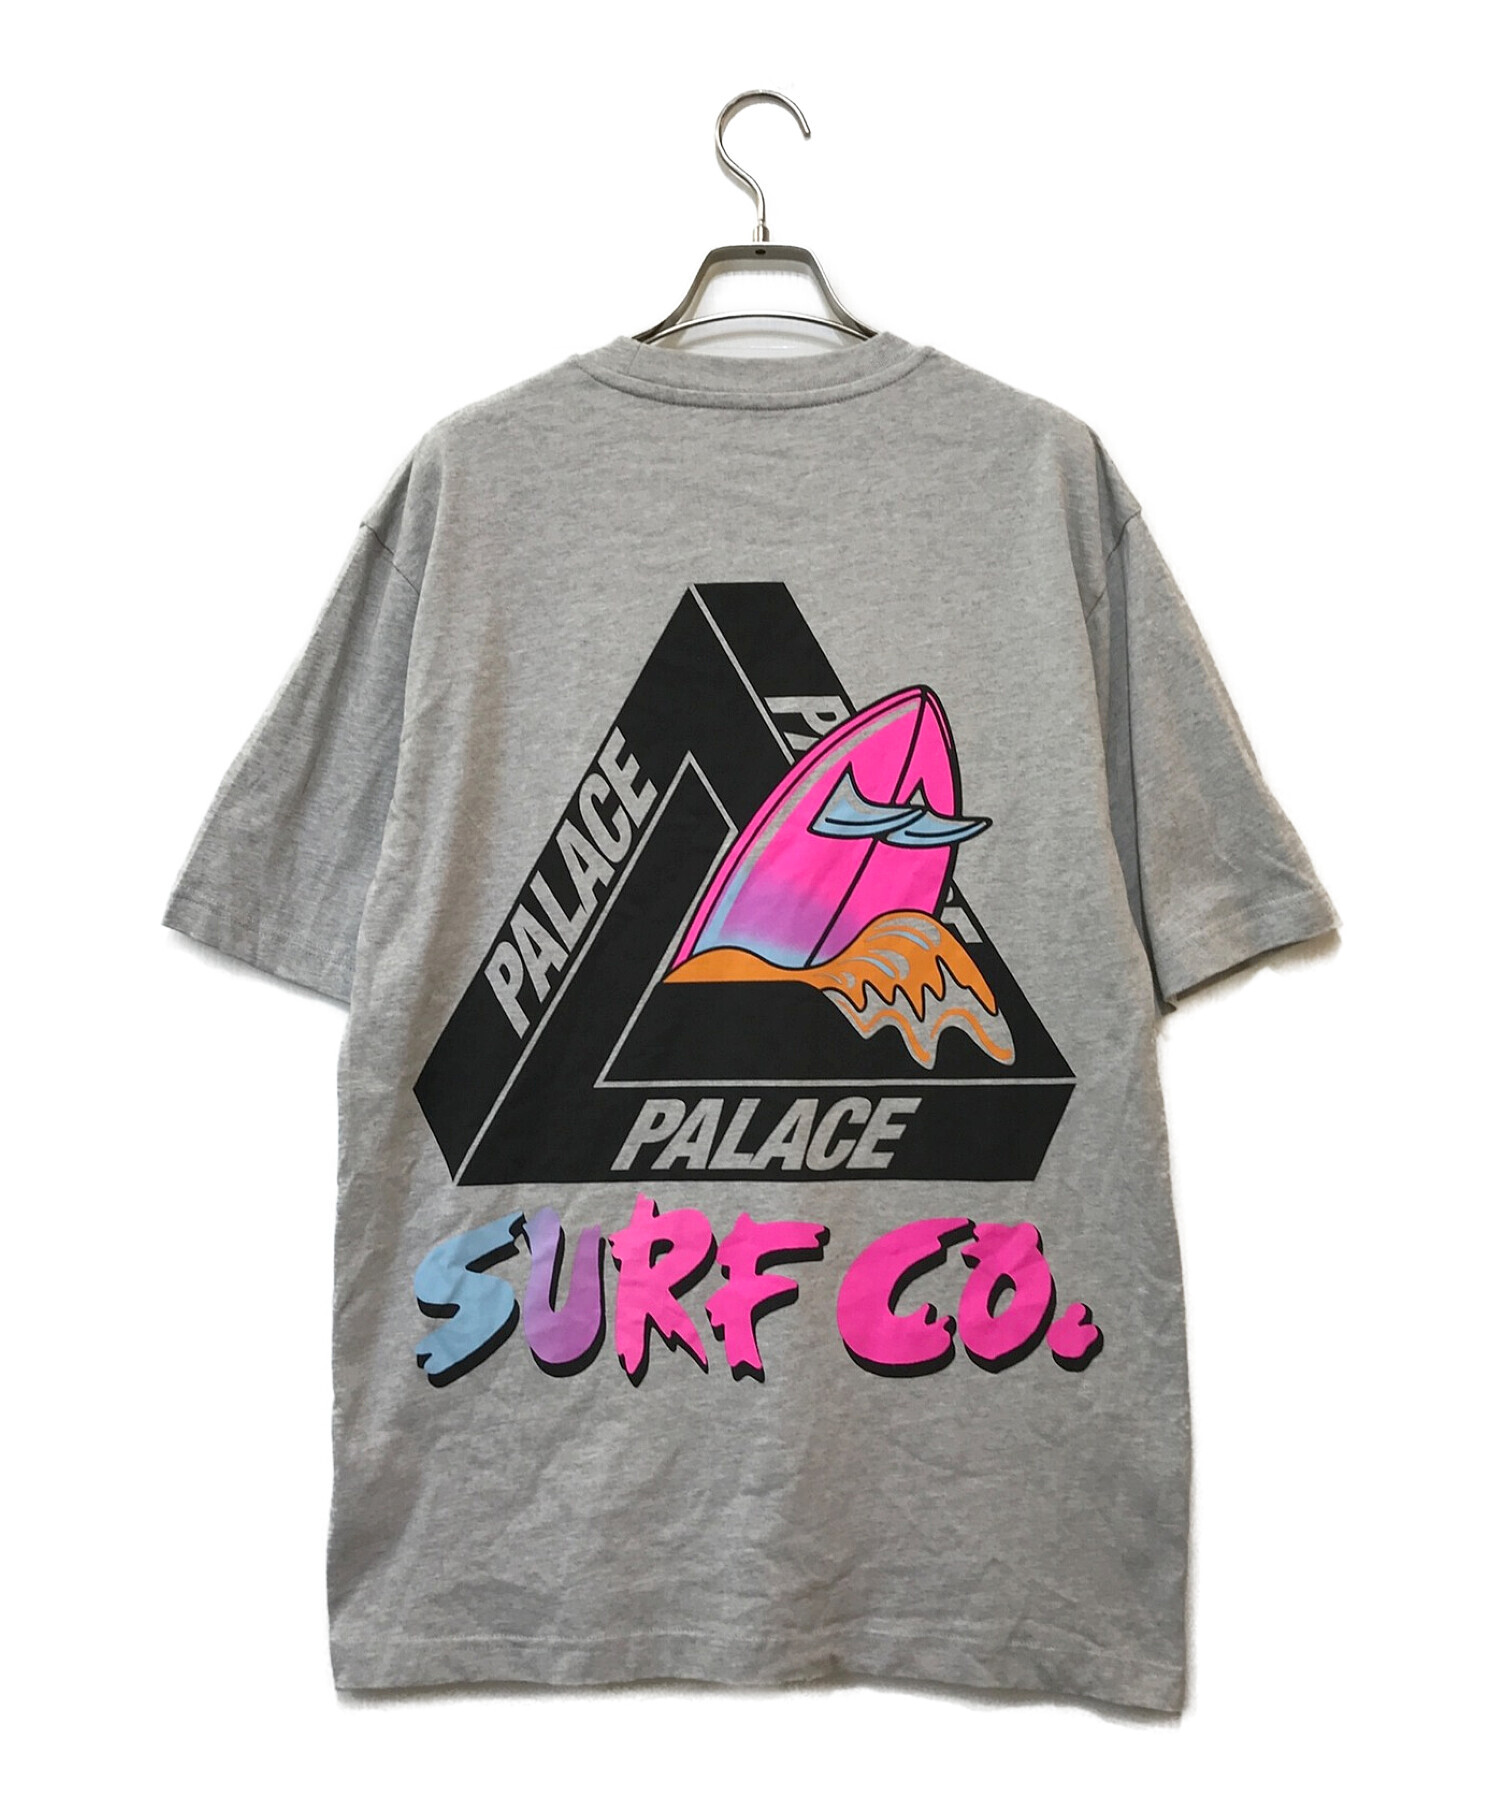 中古・古着通販】PALACE (パレス) SURF CO. T-SHIRT グレー サイズ:M 